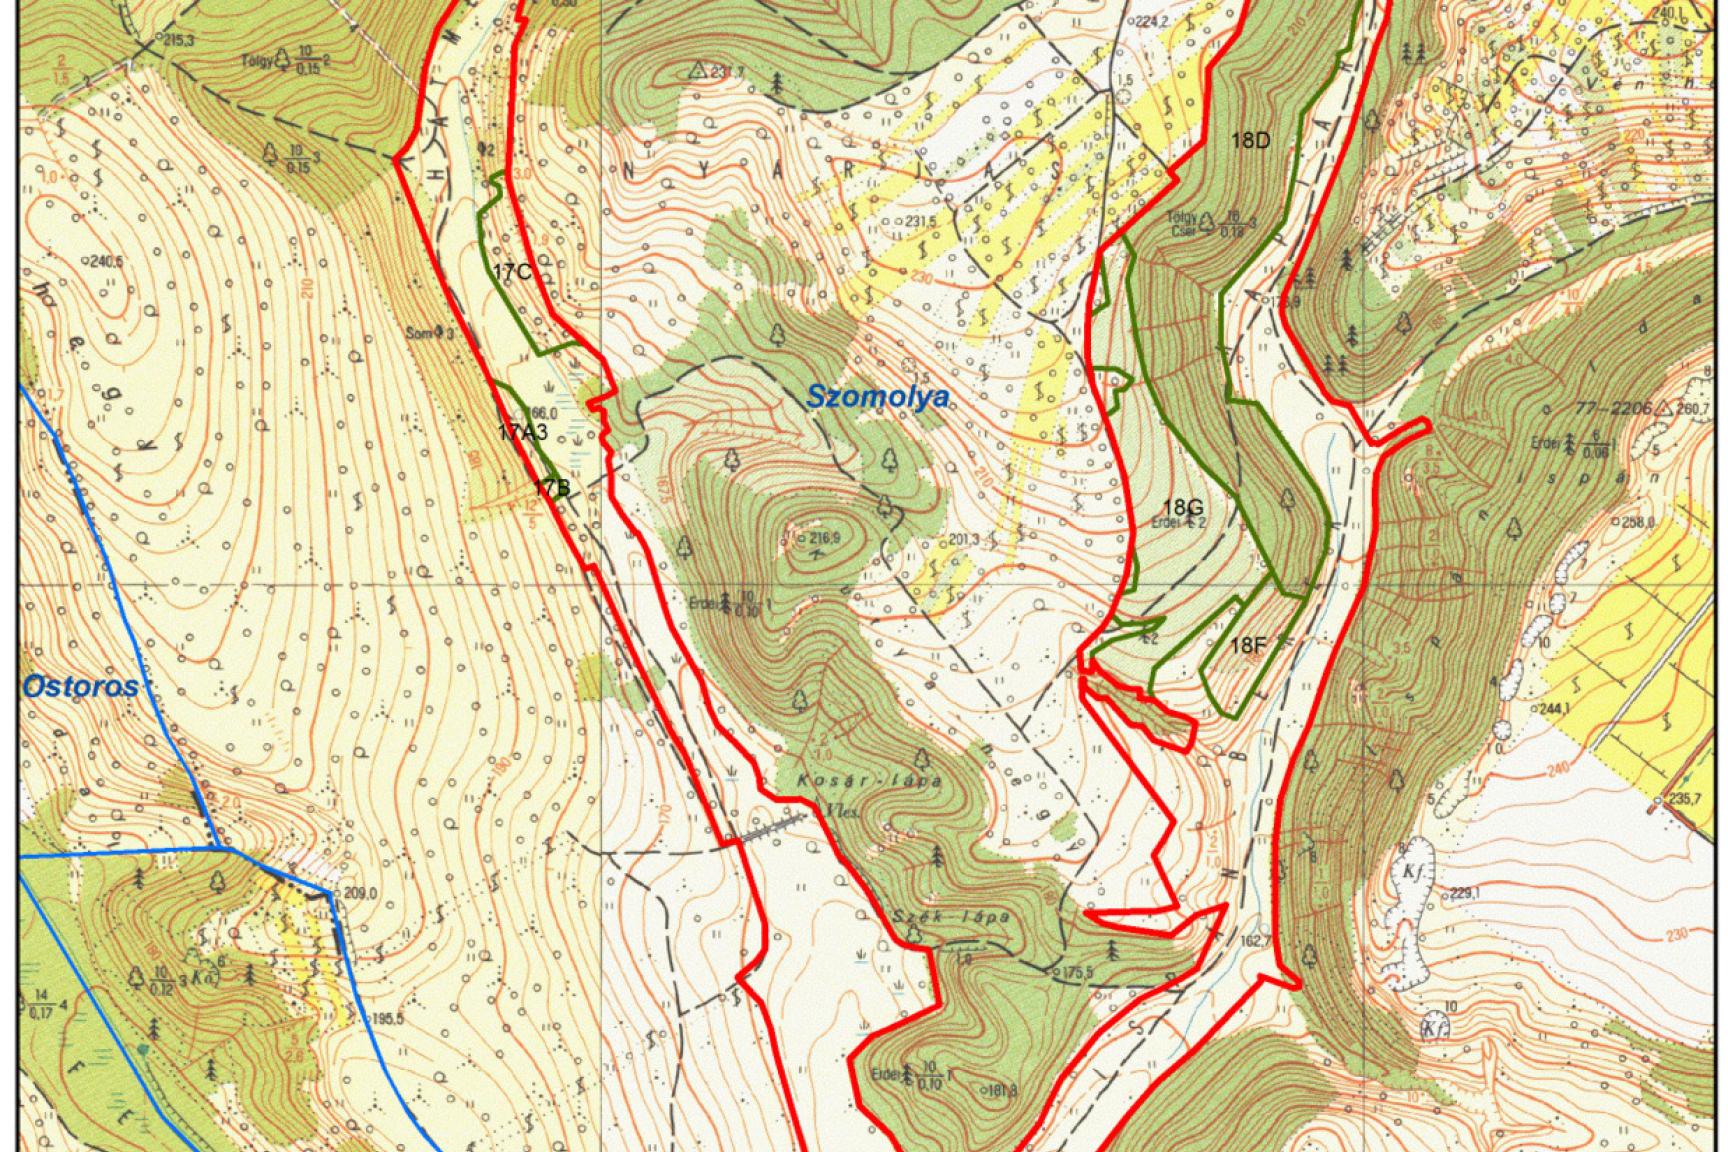 4. ábra: A tervezési terület erdészeti térképe